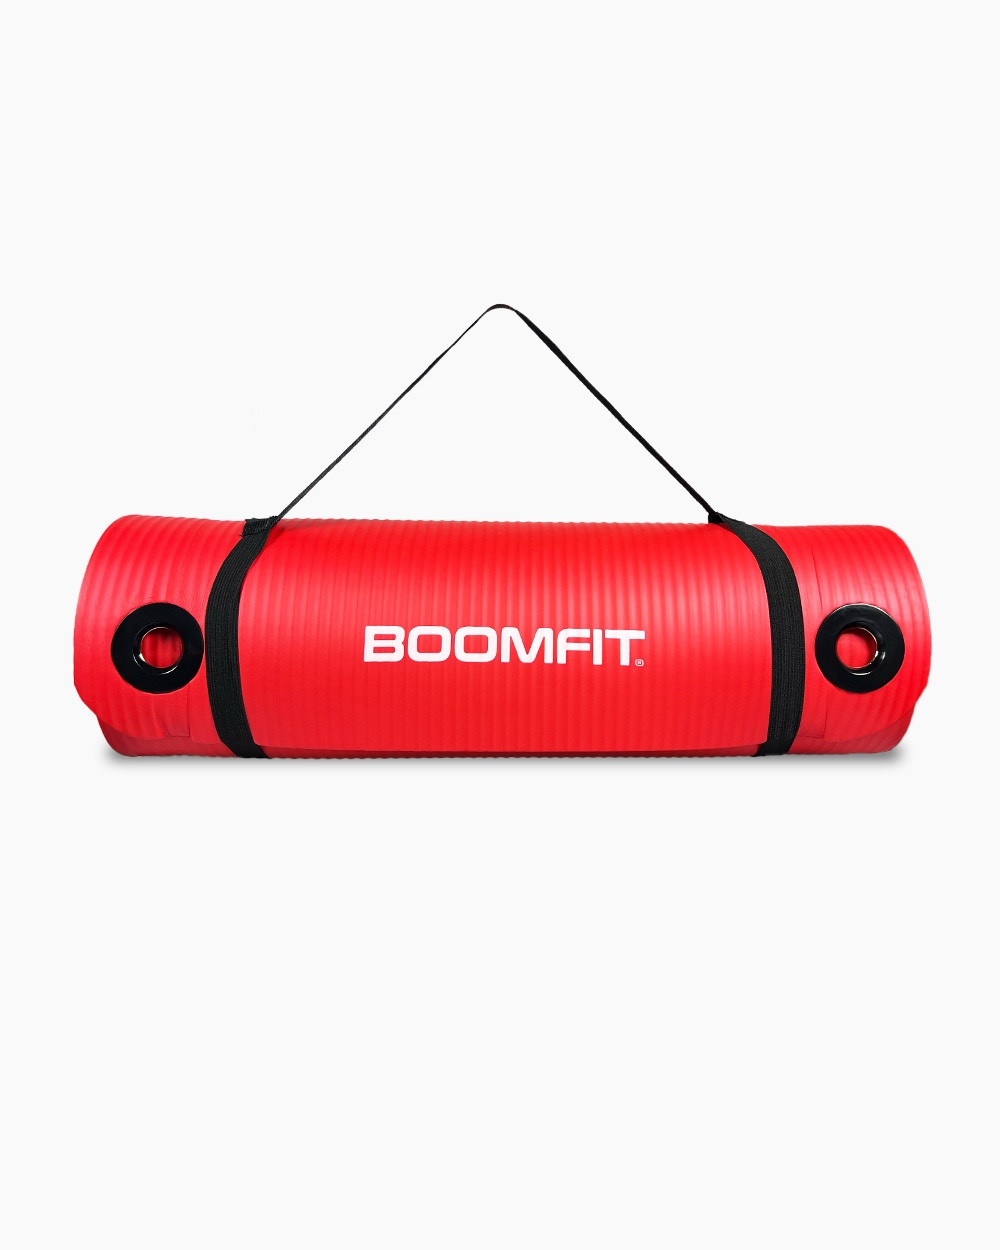 Toalla Deportiva Boomfit - Toalla Deportiva Negra - Boomfit